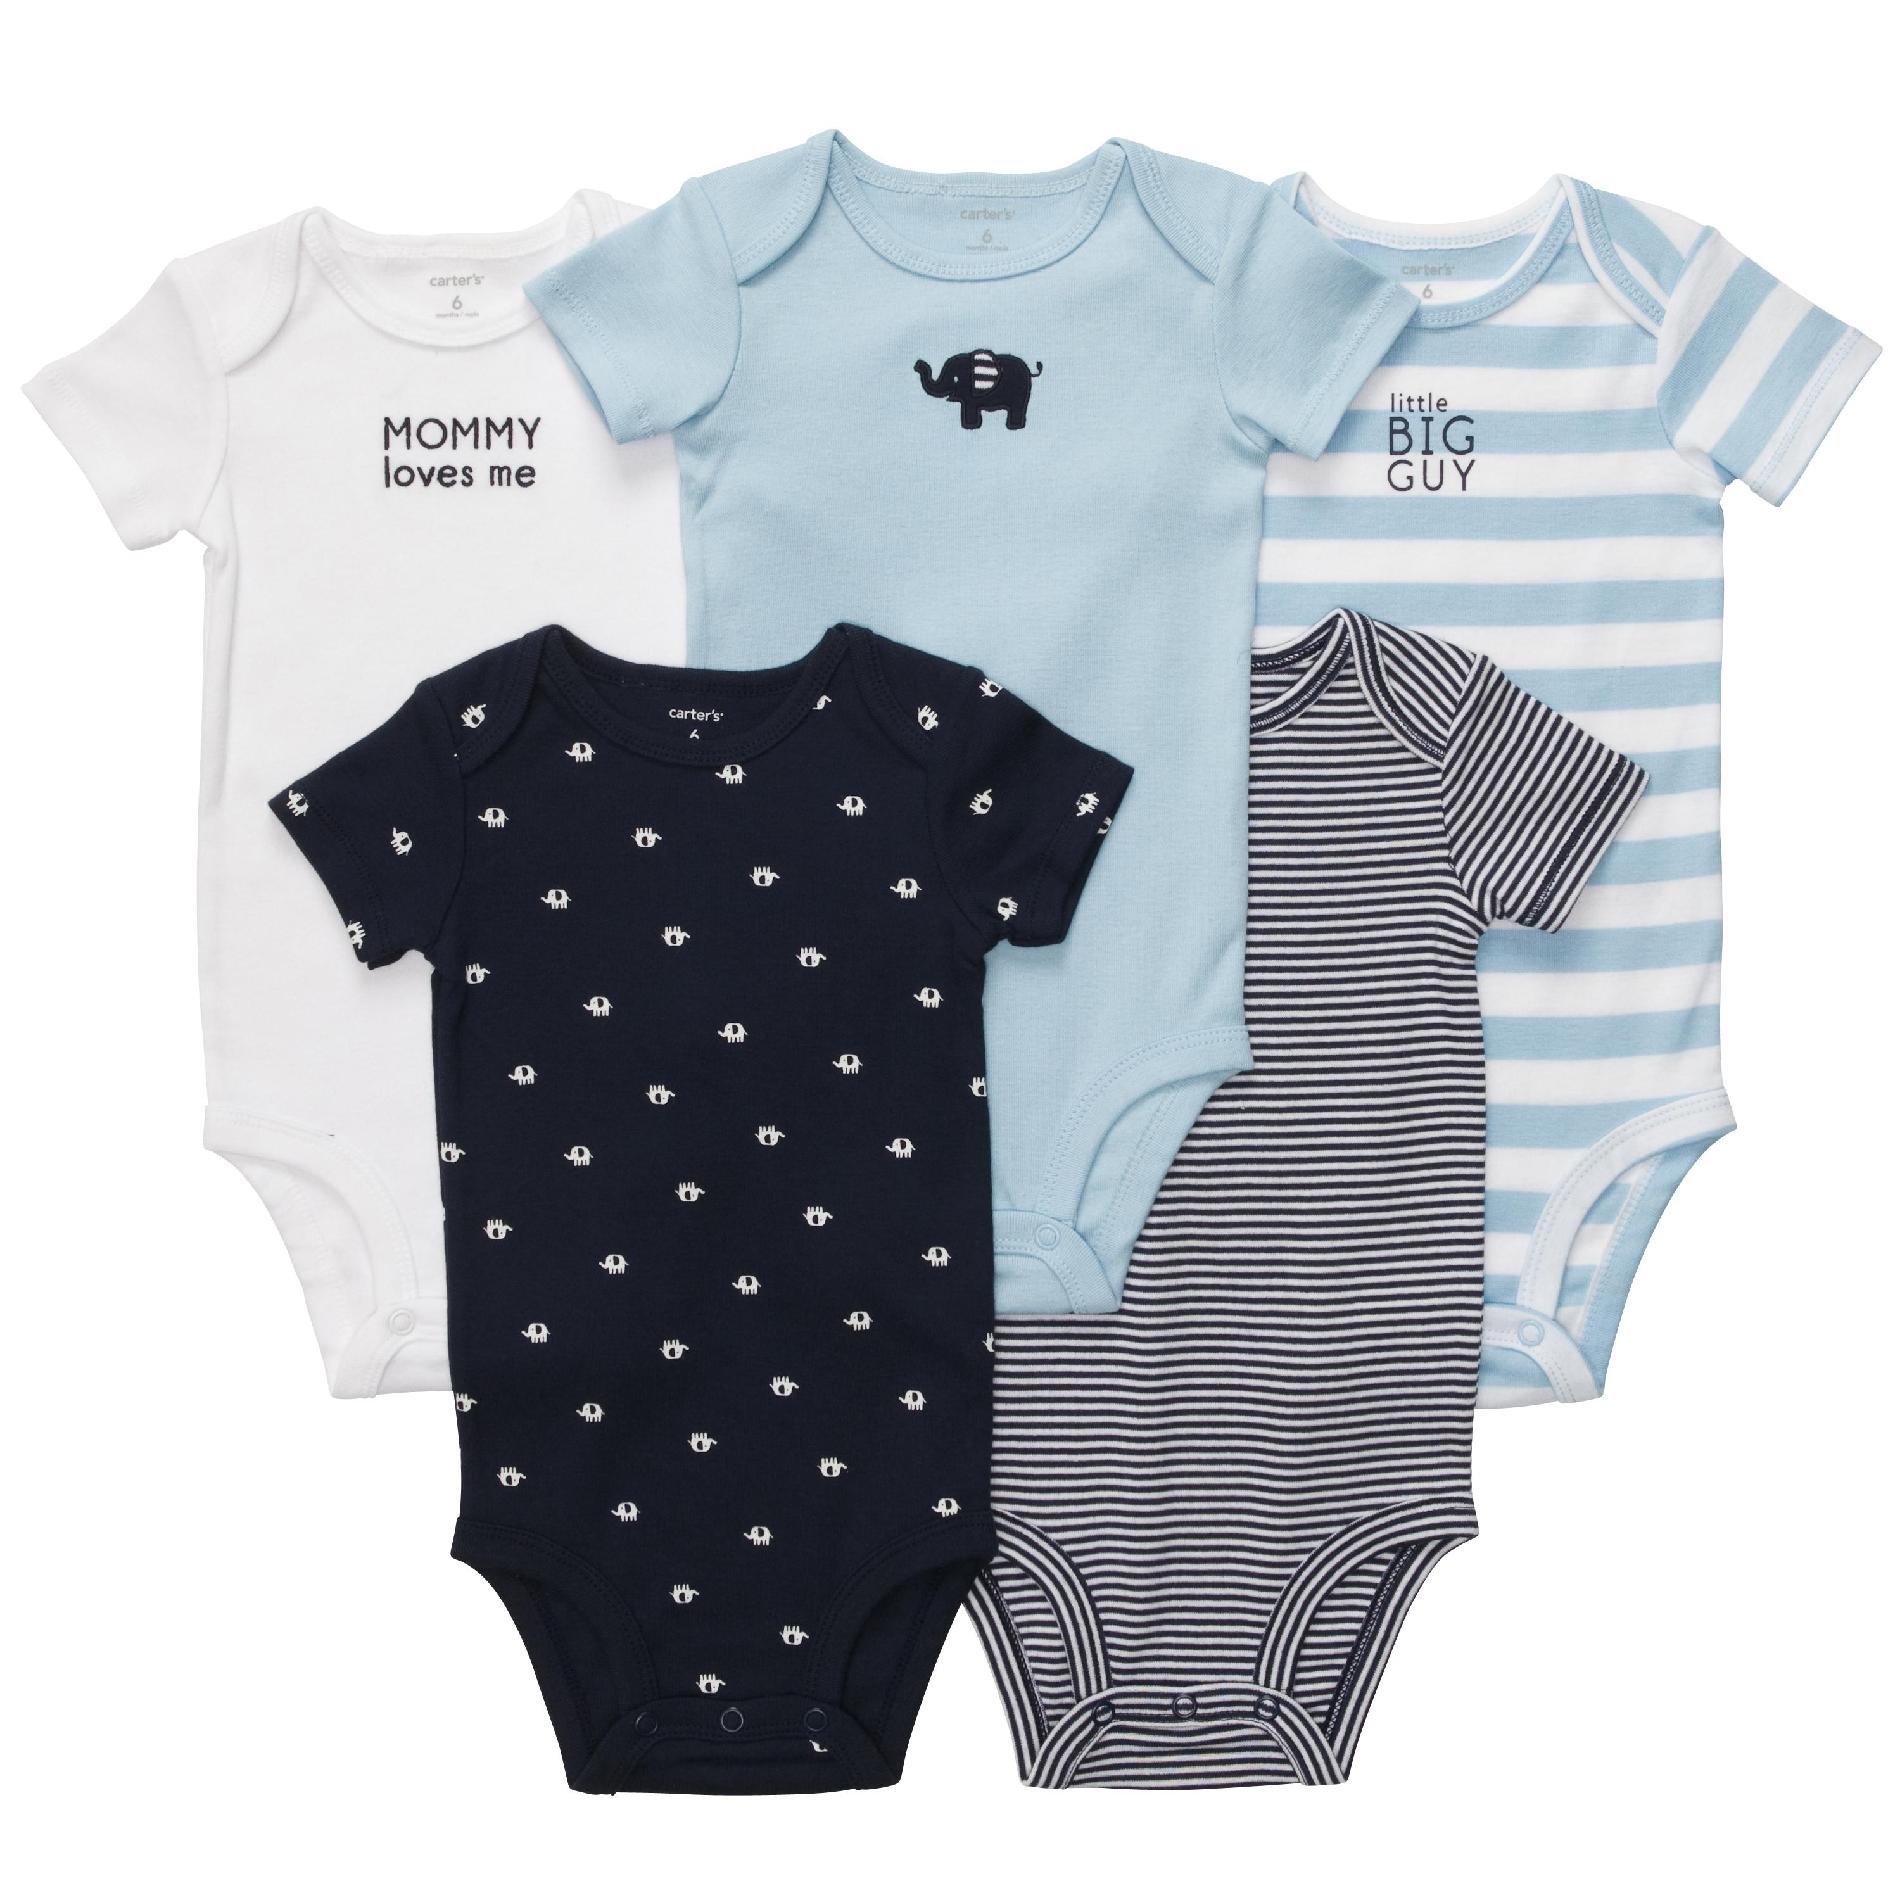 Carter's Newborn & Infant Boy's 5Pk Bodysuits - Elephant